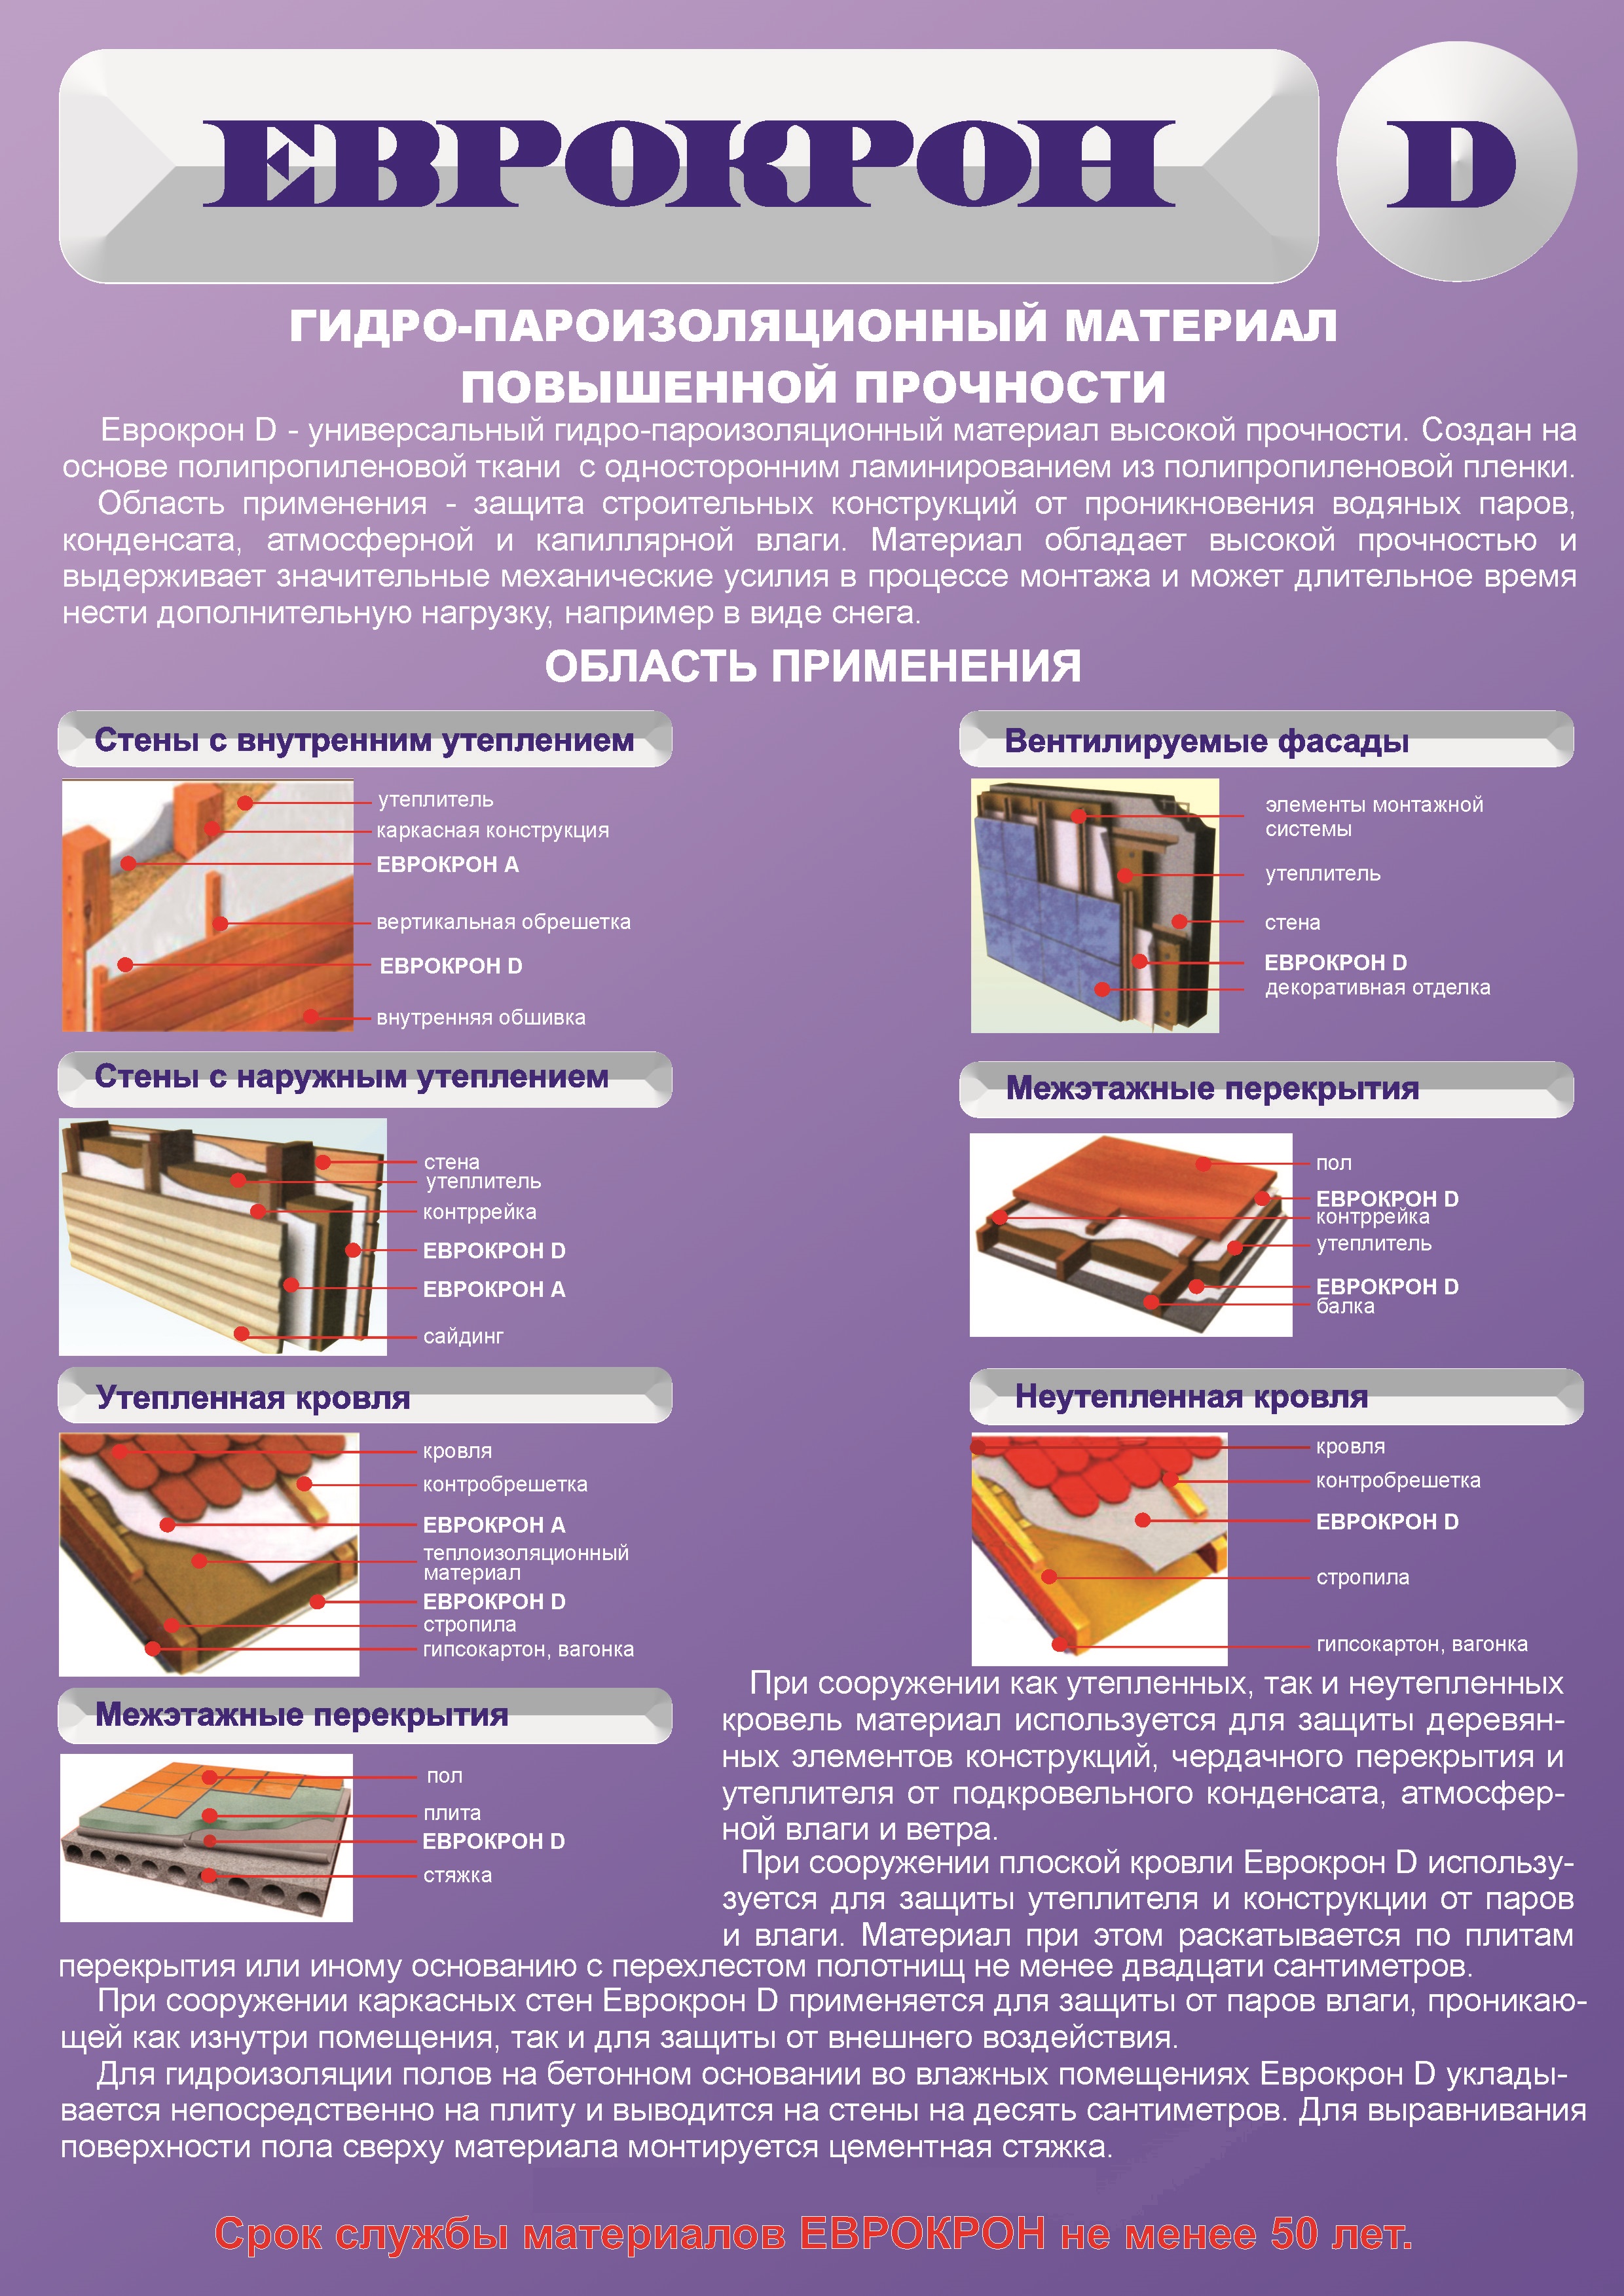 Пароизоляция (69 фото): фольгированная продукция для утепления пола и потолка в доме, как работает негорючий вариант